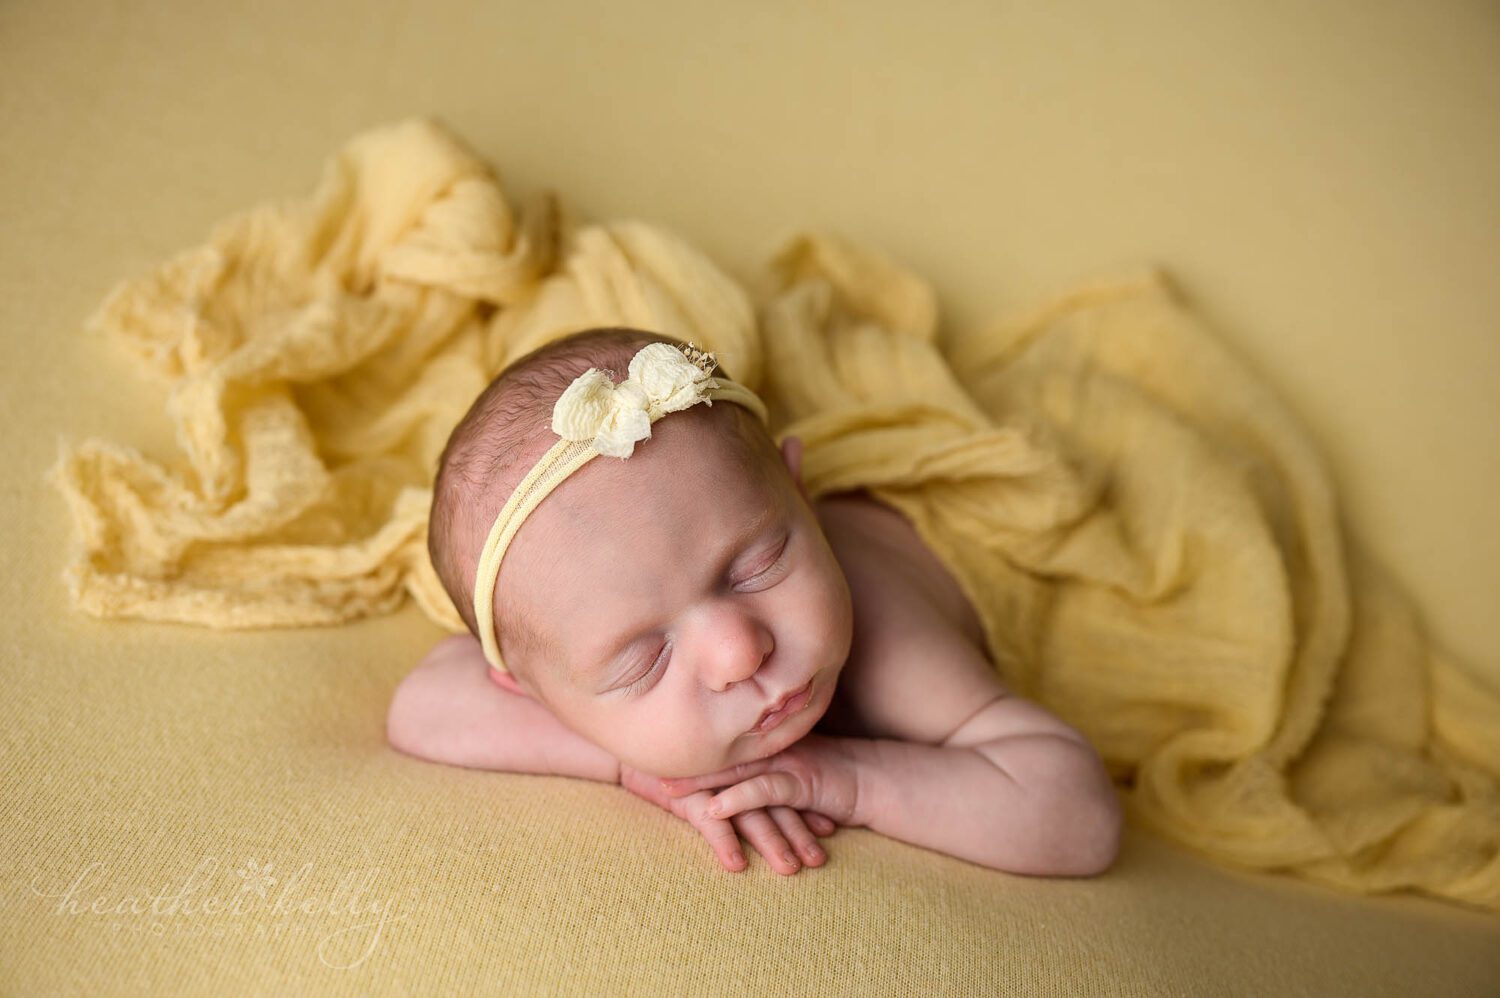 ct newborn photographer